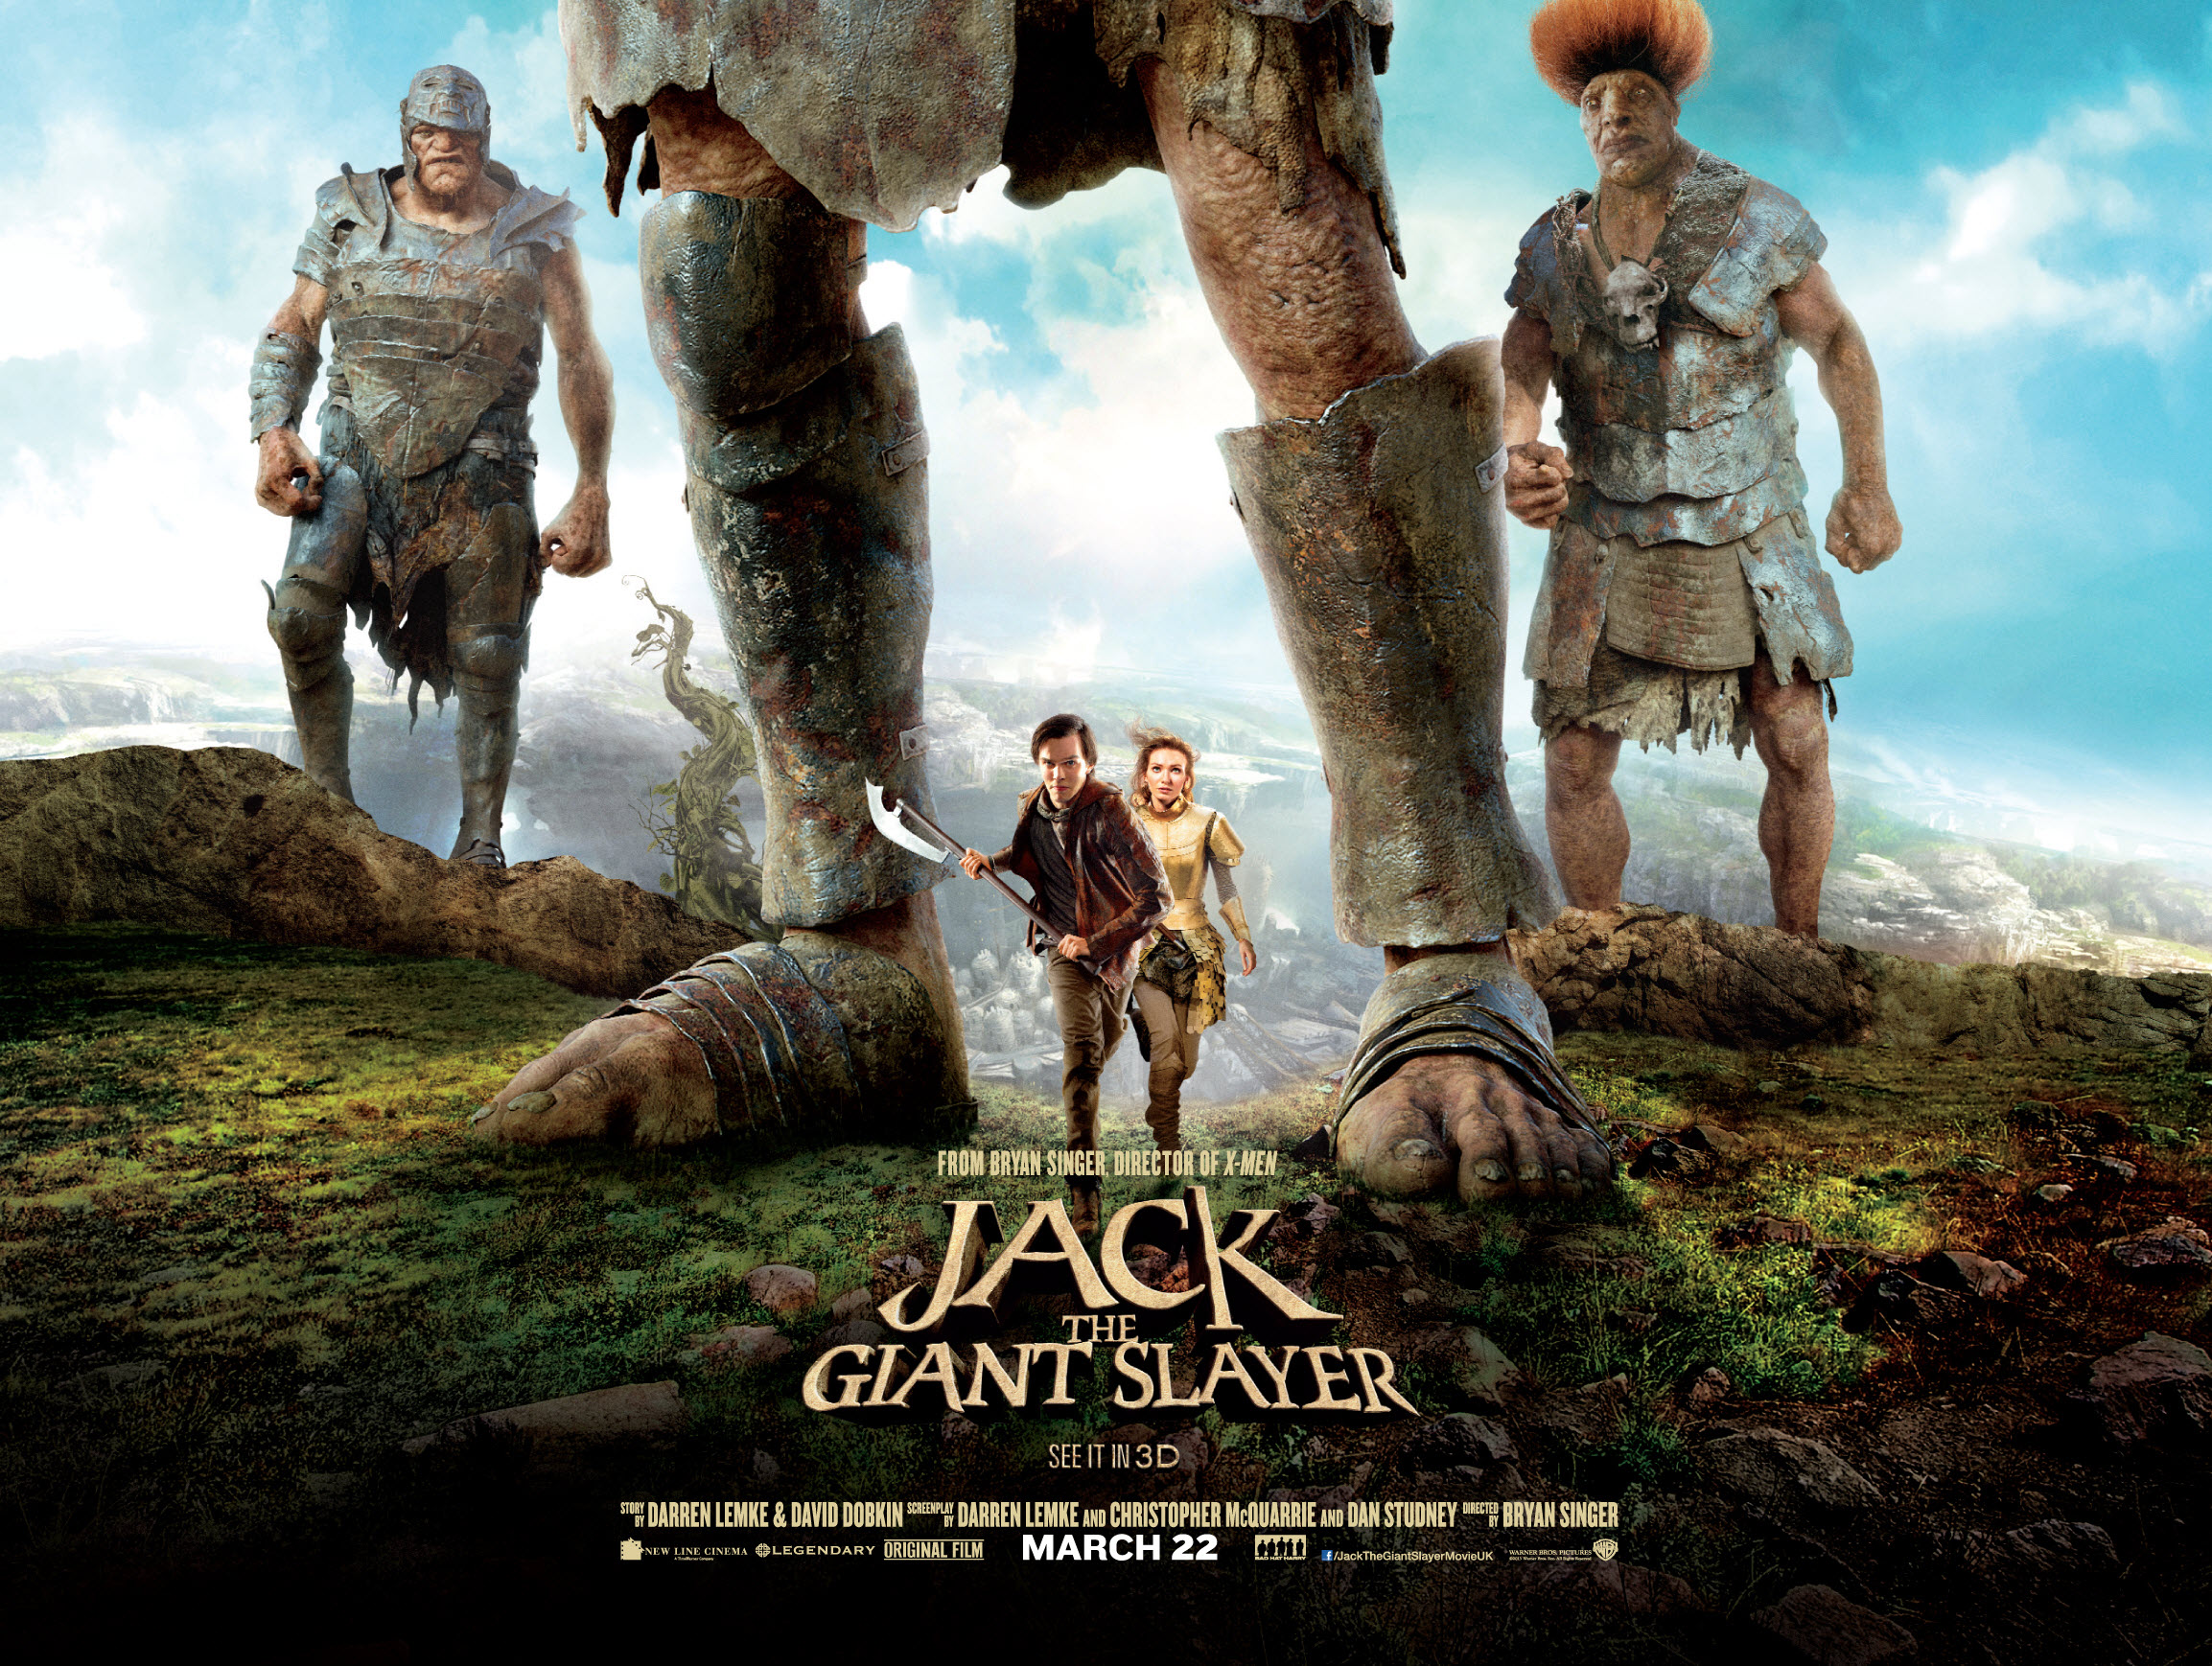 Великан по английски. Jack the giant Slayer 2013. Иэн МАКШЕЙН Джек покоритель великанов. Джек покоритель великанов 2013.